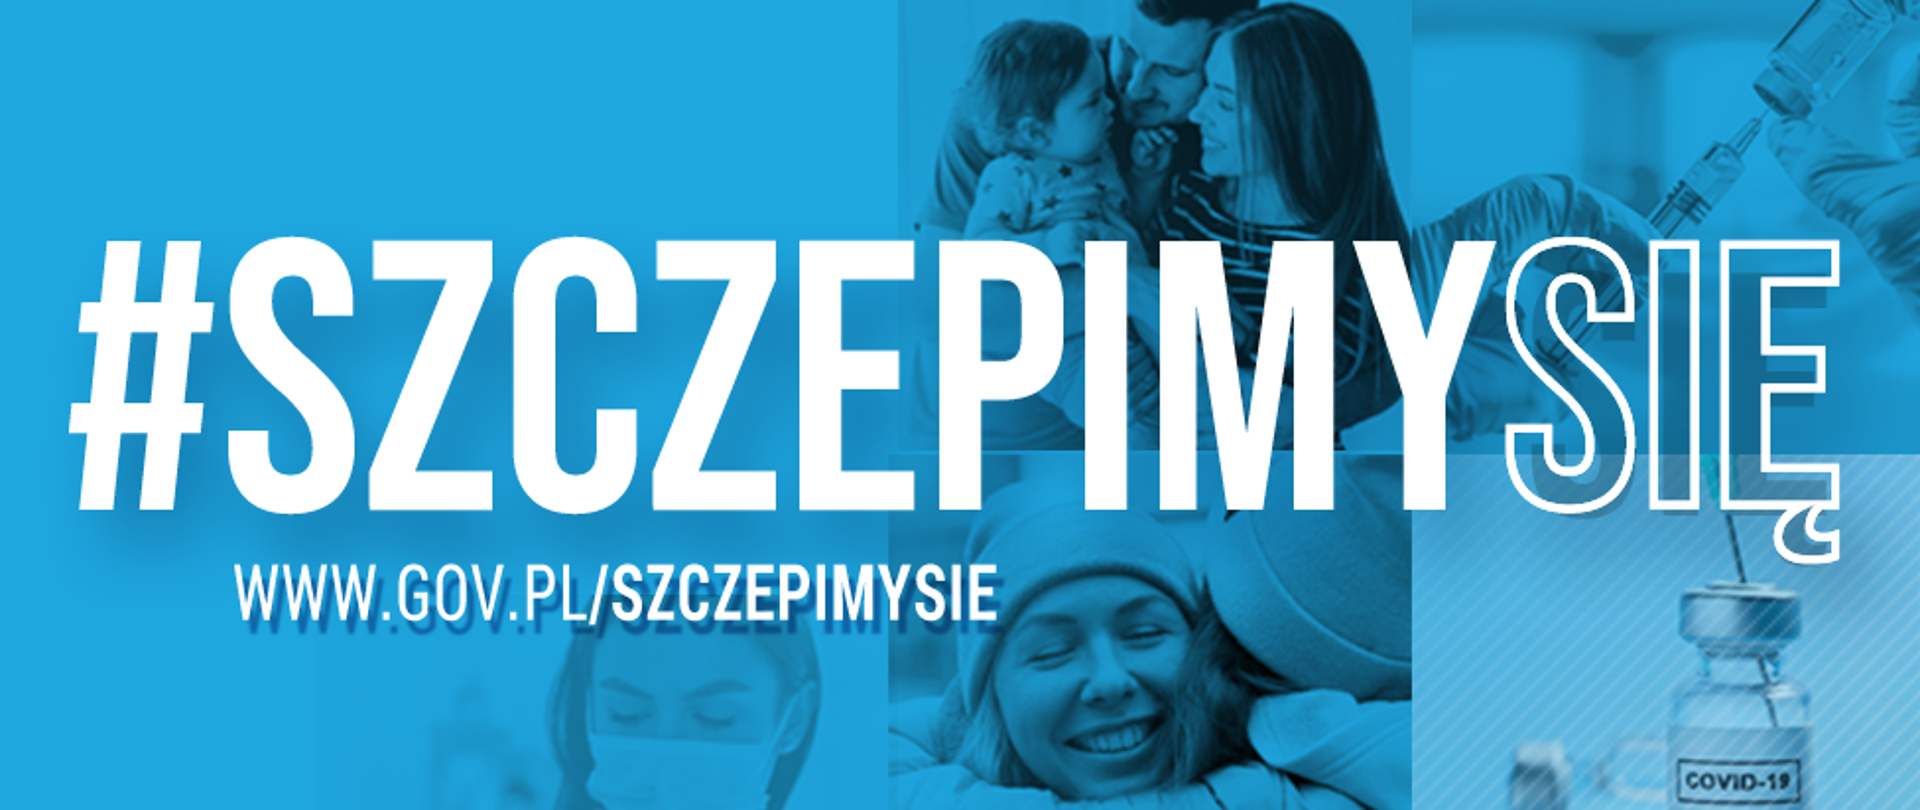 Baner promocyjny akcji Narodowego Programu Szczepień. Na pierwszym planie napis #SZCZEPIMYSIĘ, poniżej adres strony www.gov.pl/szczepimysie. W tle zbiór zdjęć przedstawiający szczepionki, proces szczepienia oraz rodzinę. 